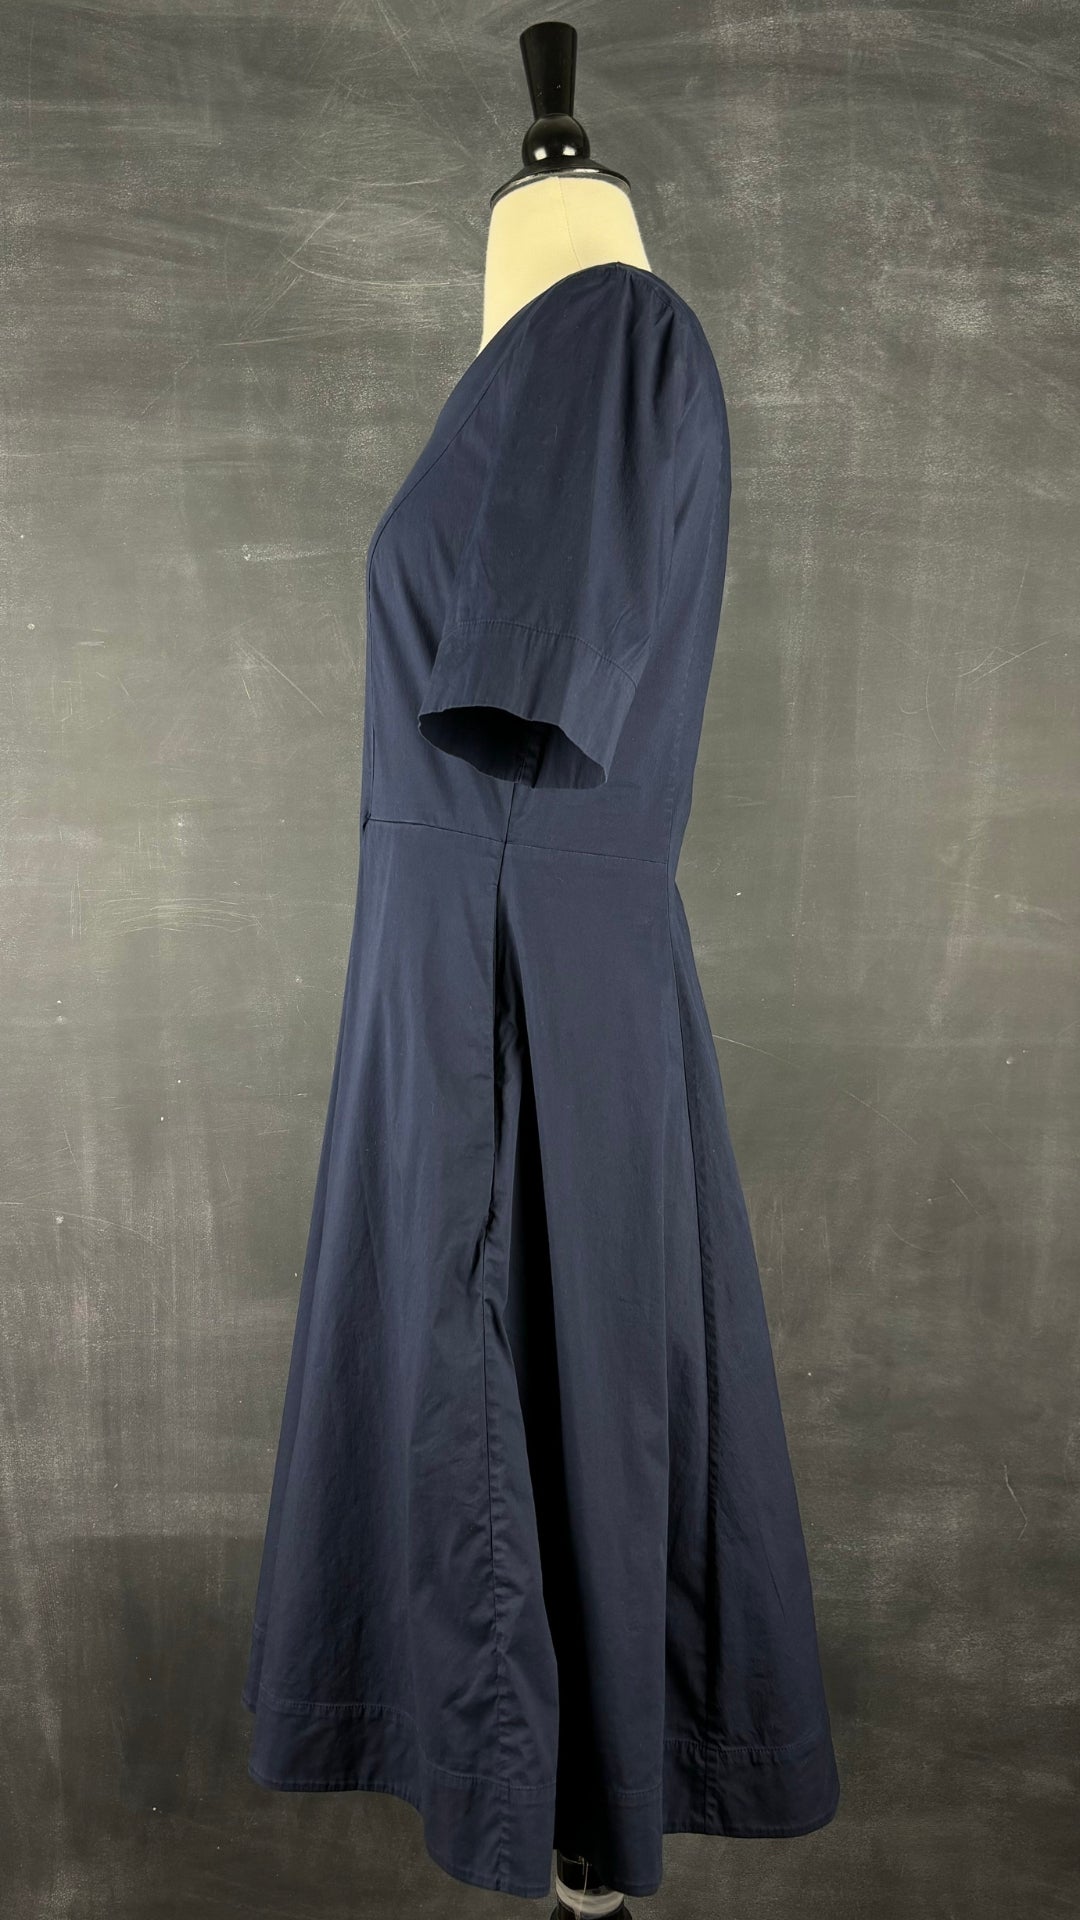 Robe marine jupe ample avec poches Cos, taille 8 (small). Vue de côté.